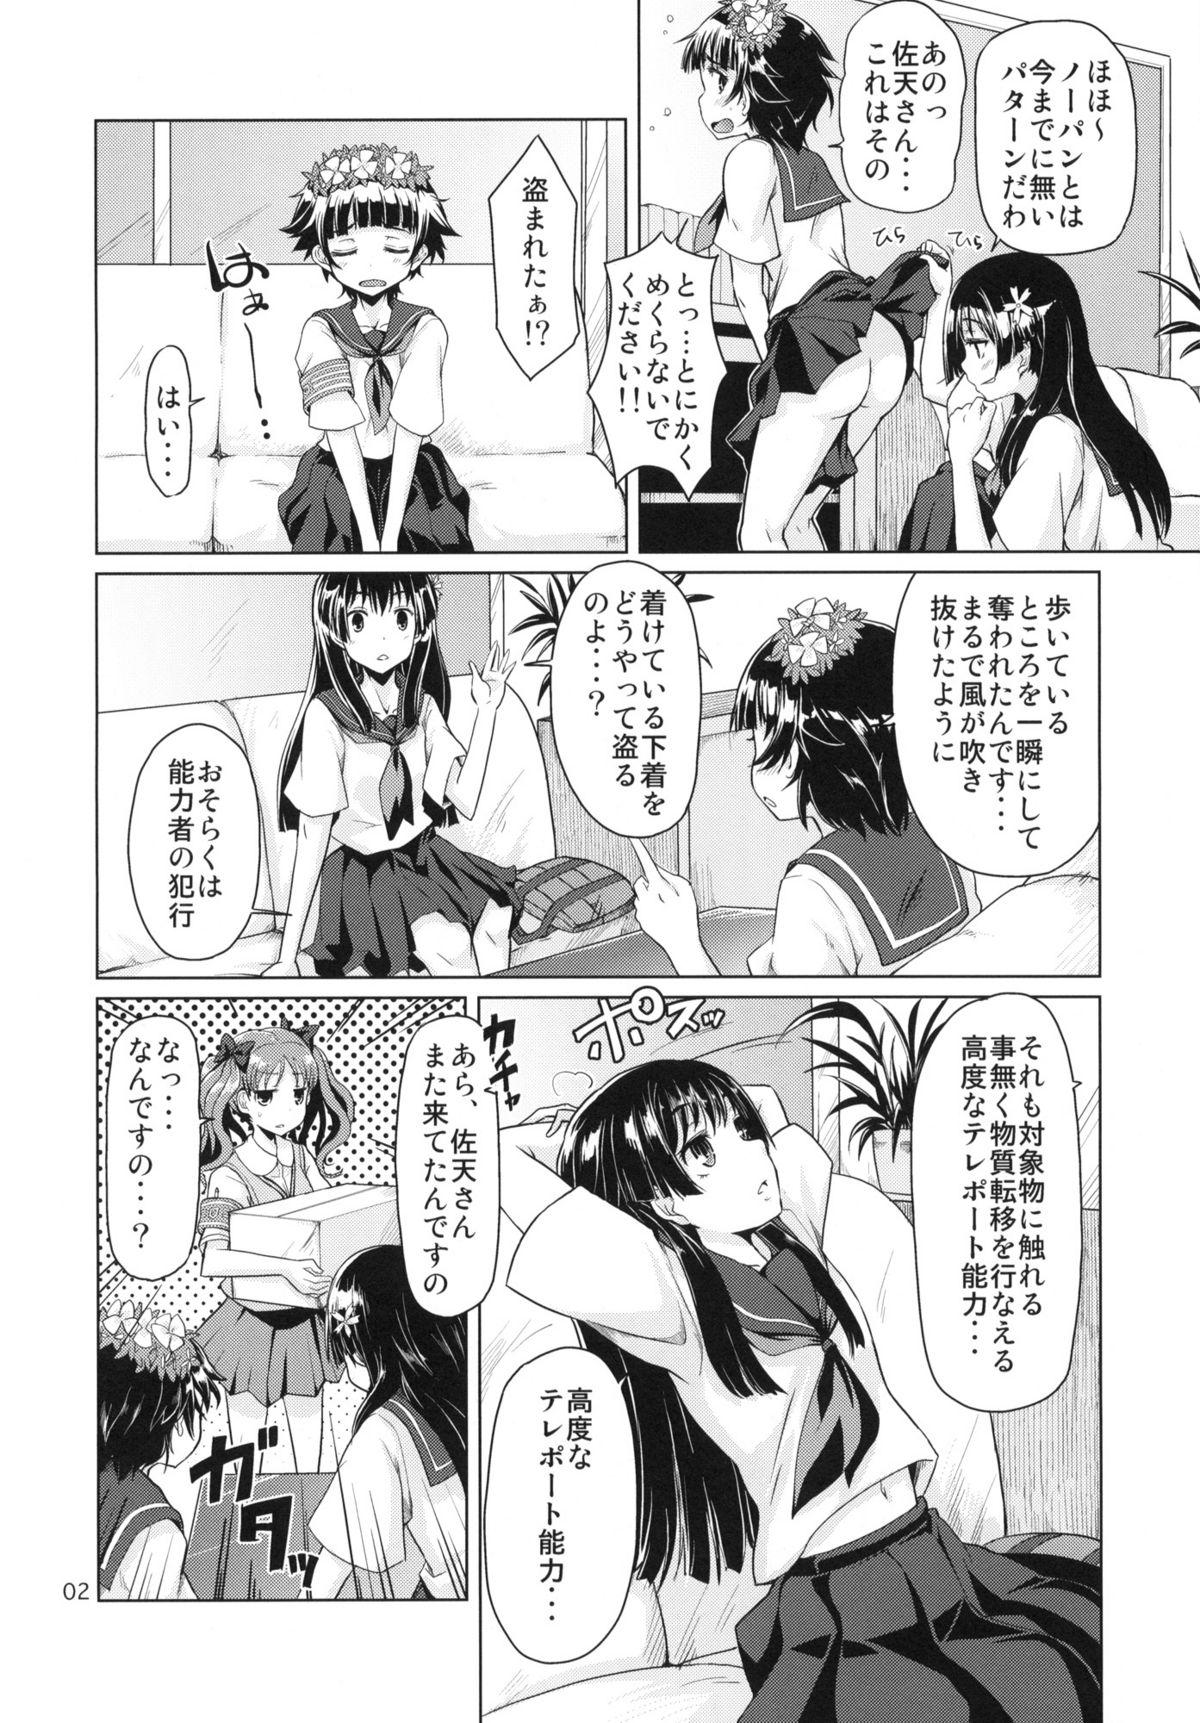 Masturbandose i.Saten - Toaru kagaku no railgun Masterbate - Page 3